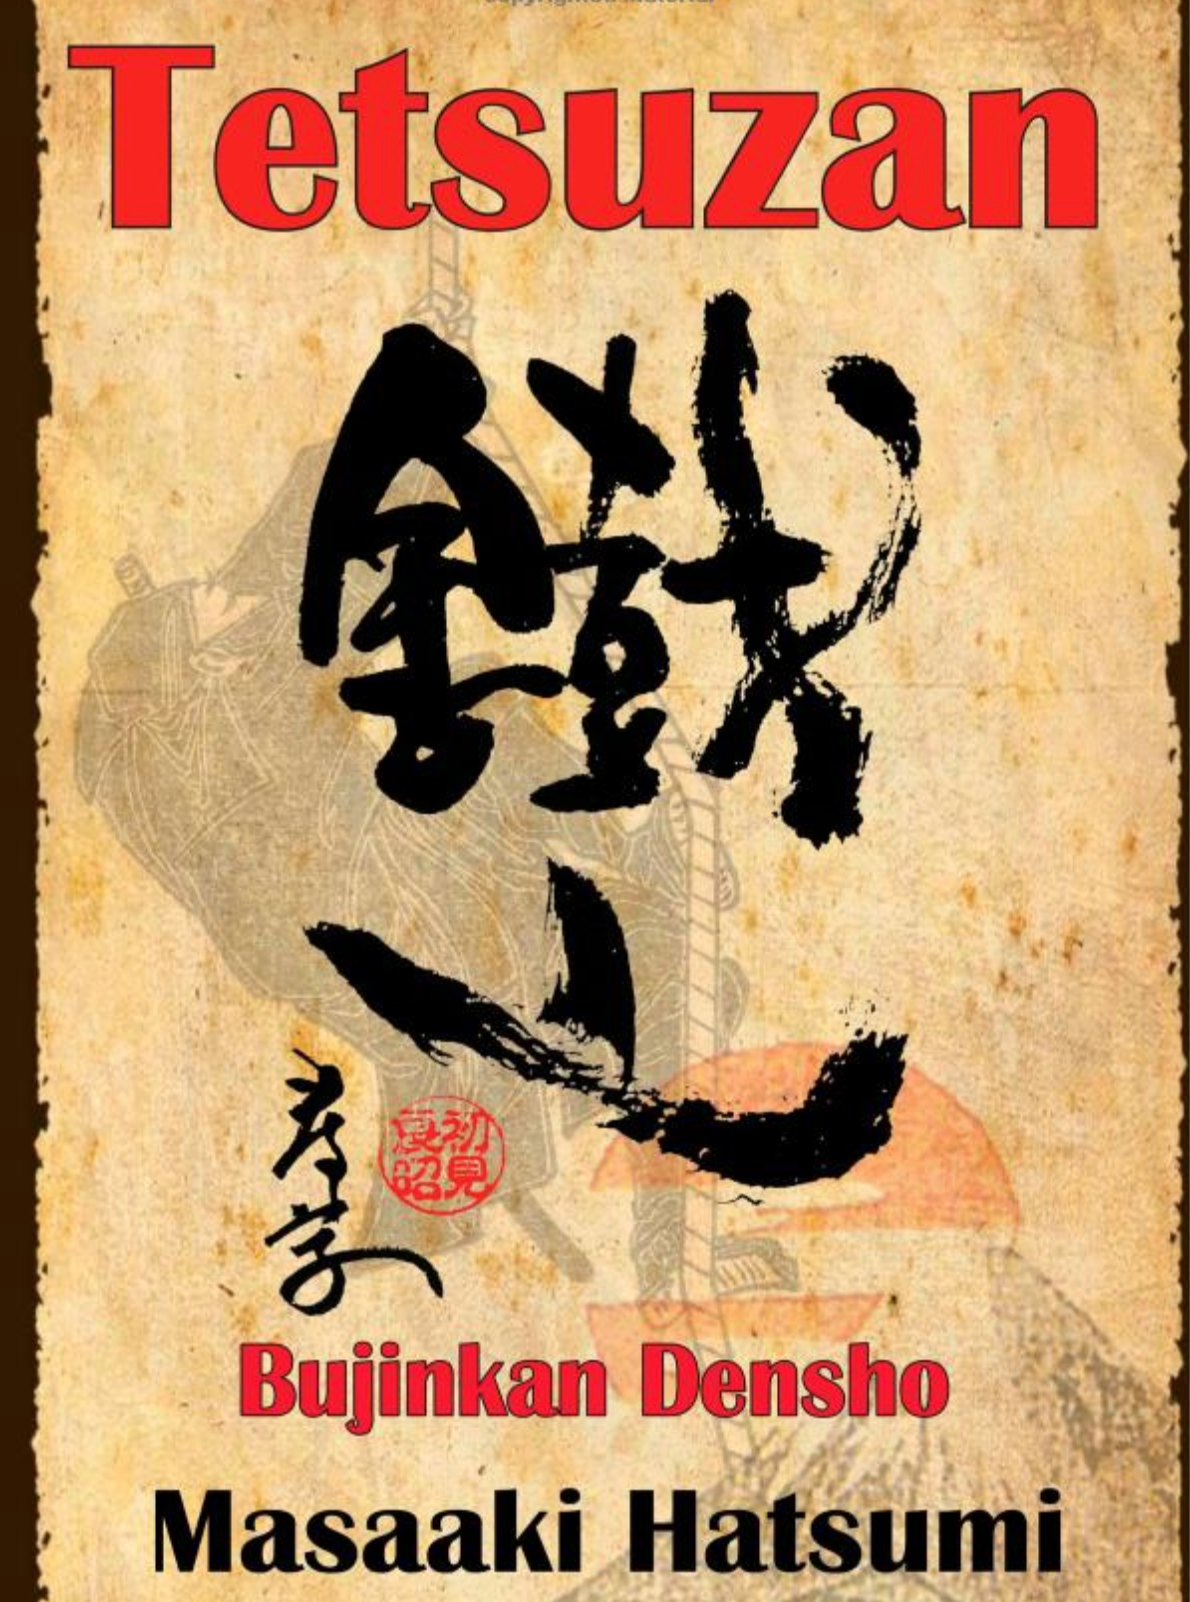 Tetsuzan: Bujinkan Densho (2nd Edition) Book by Masaaki Hatsumi - Budovideos